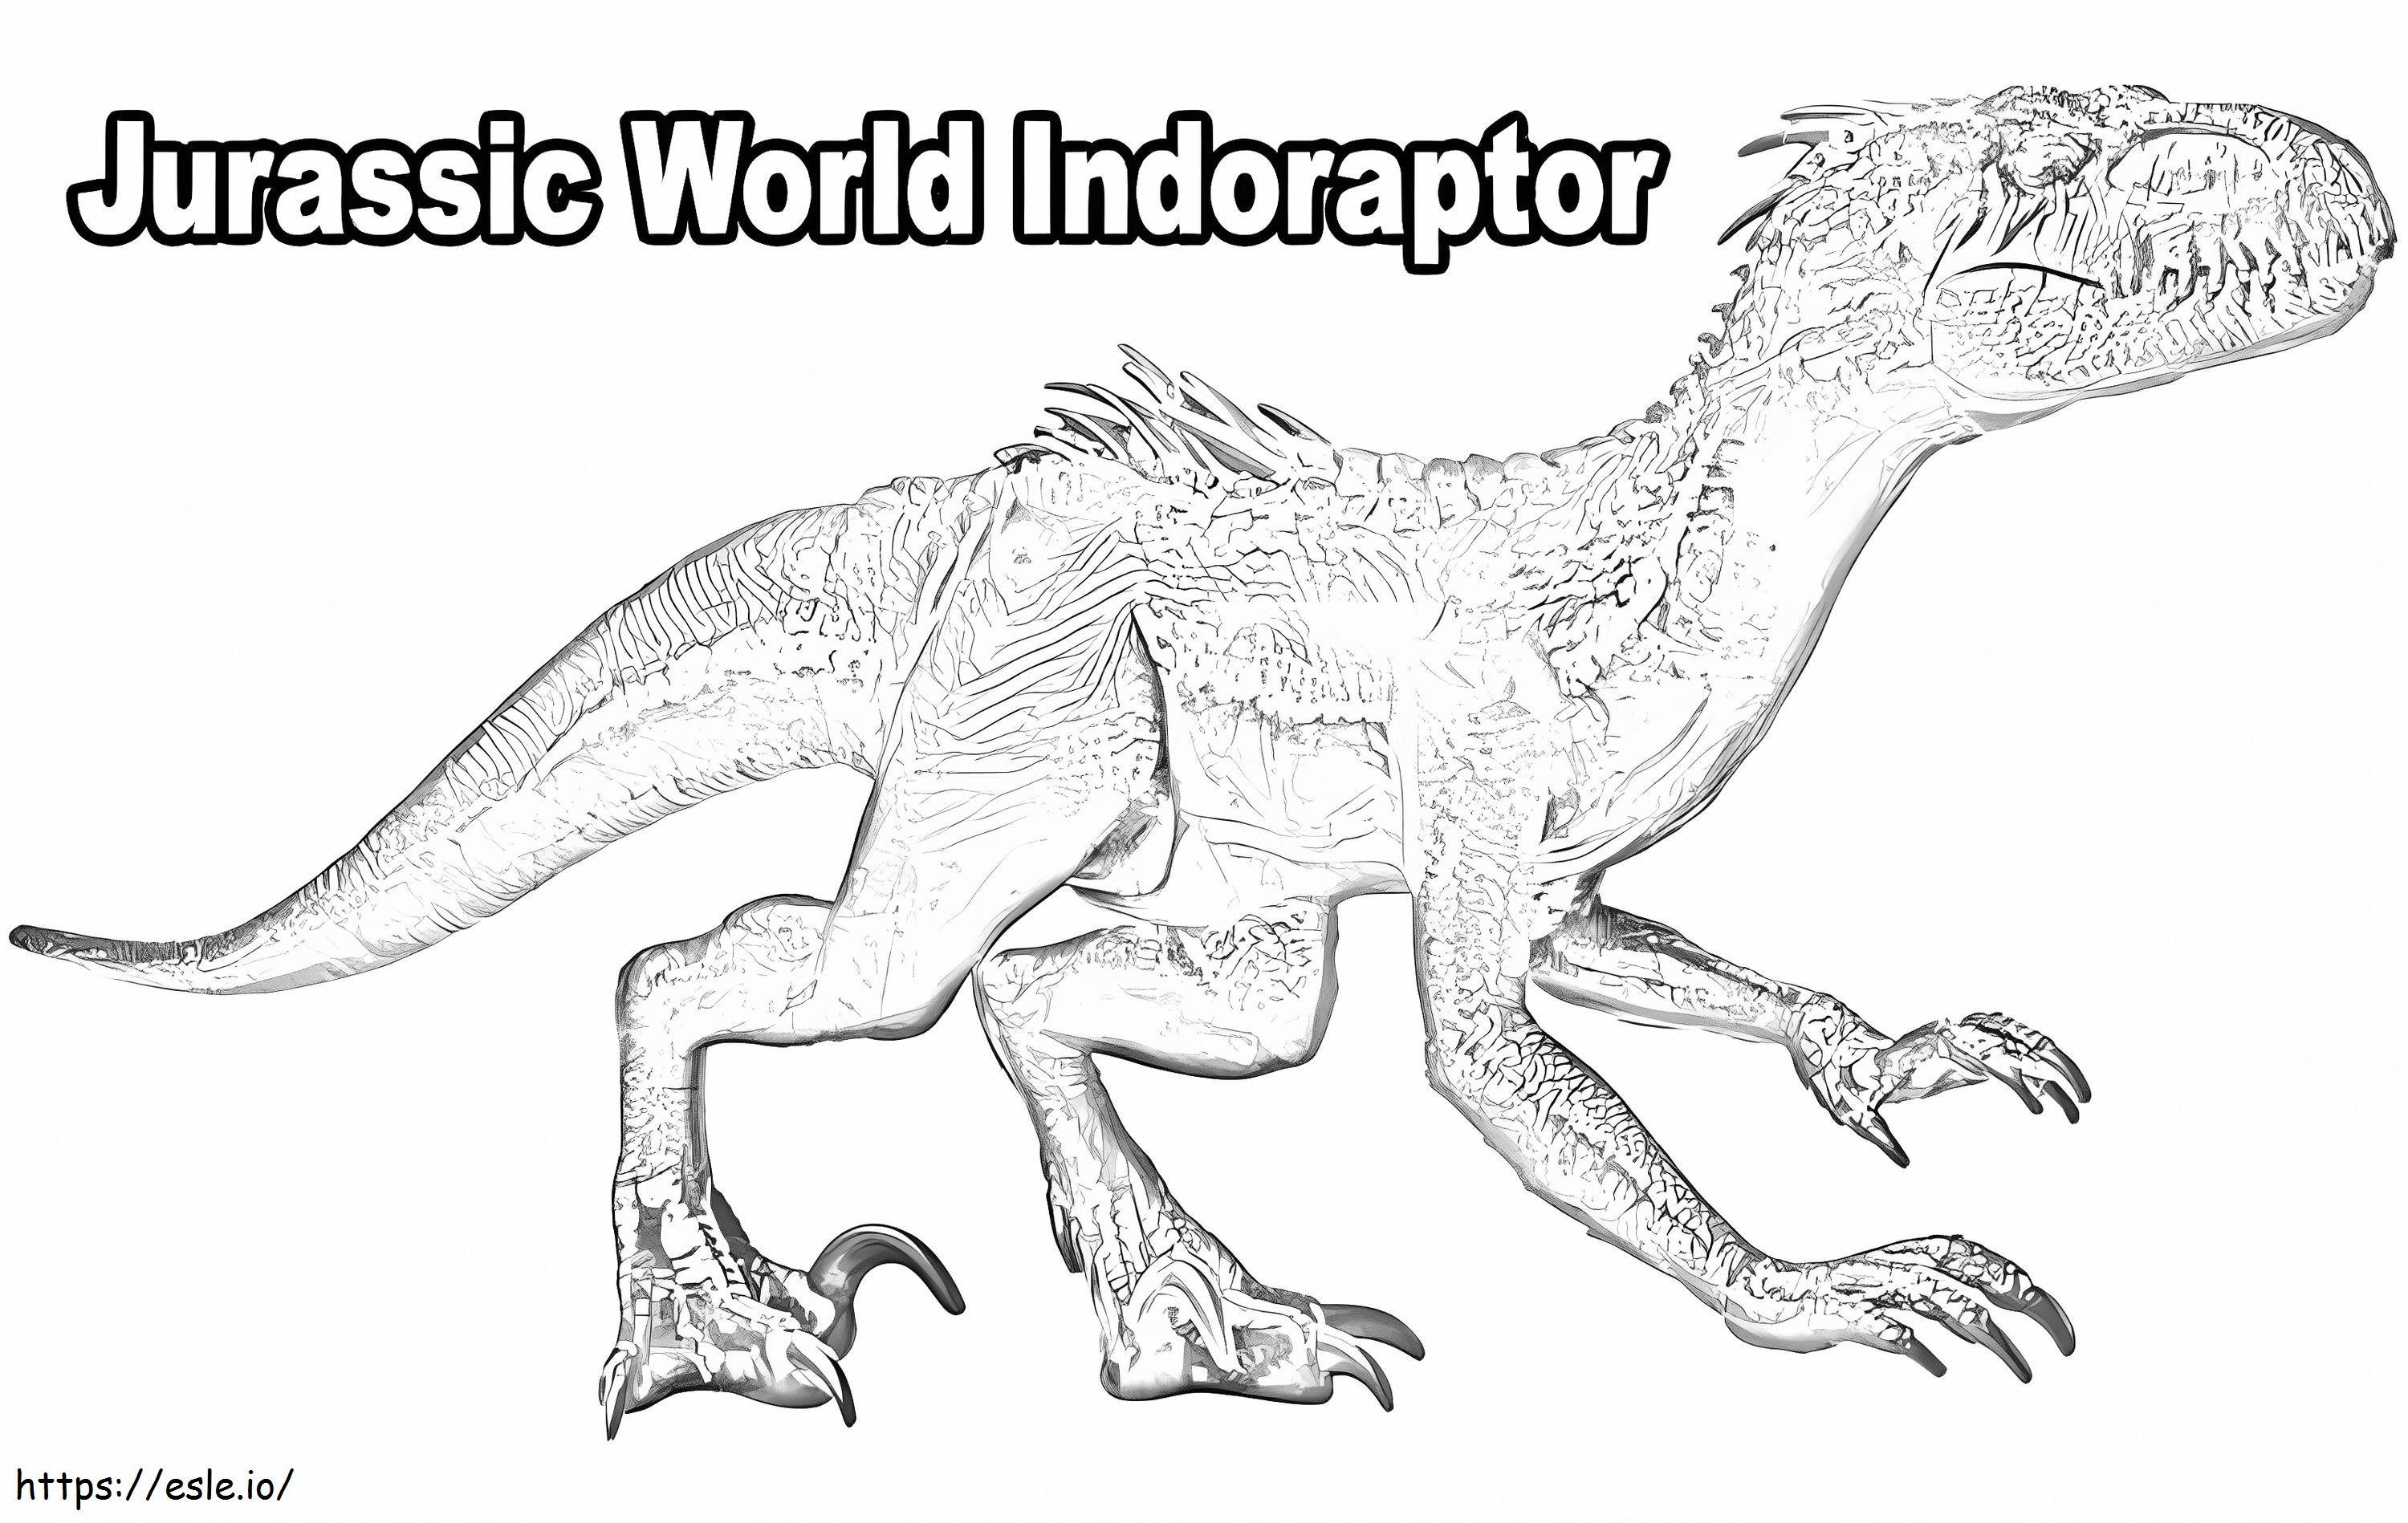 Indoraptor nel mondo giurassico da colorare